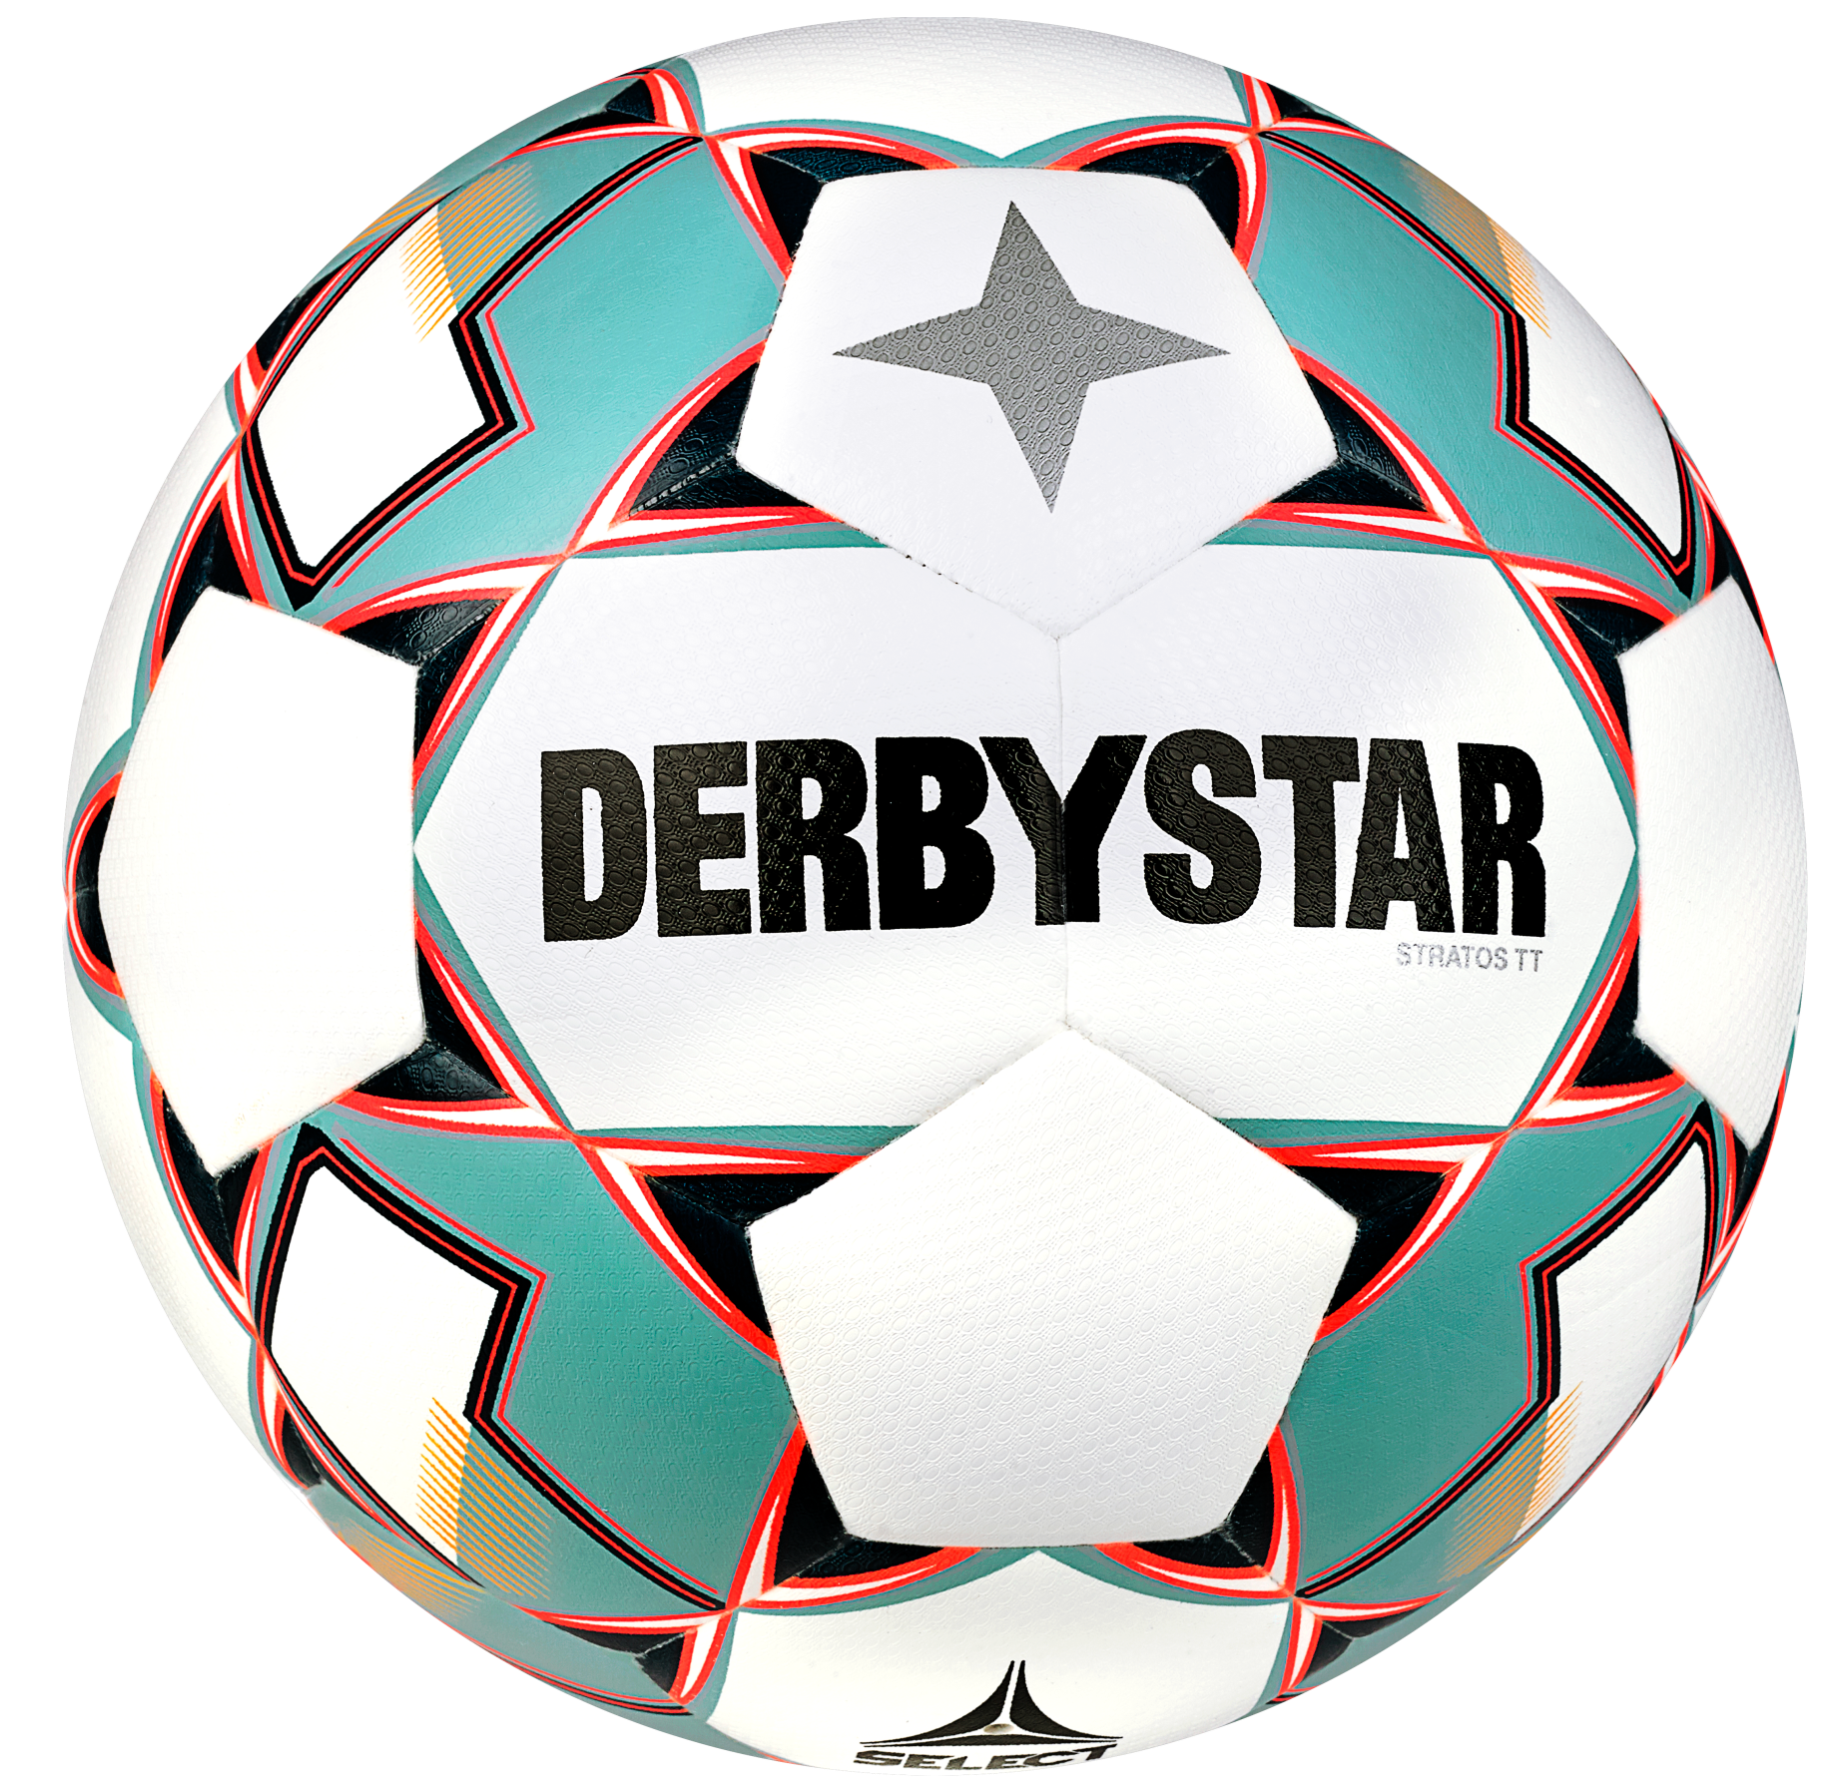 Ball Derbystar Stratos TT v23 Trainingsball